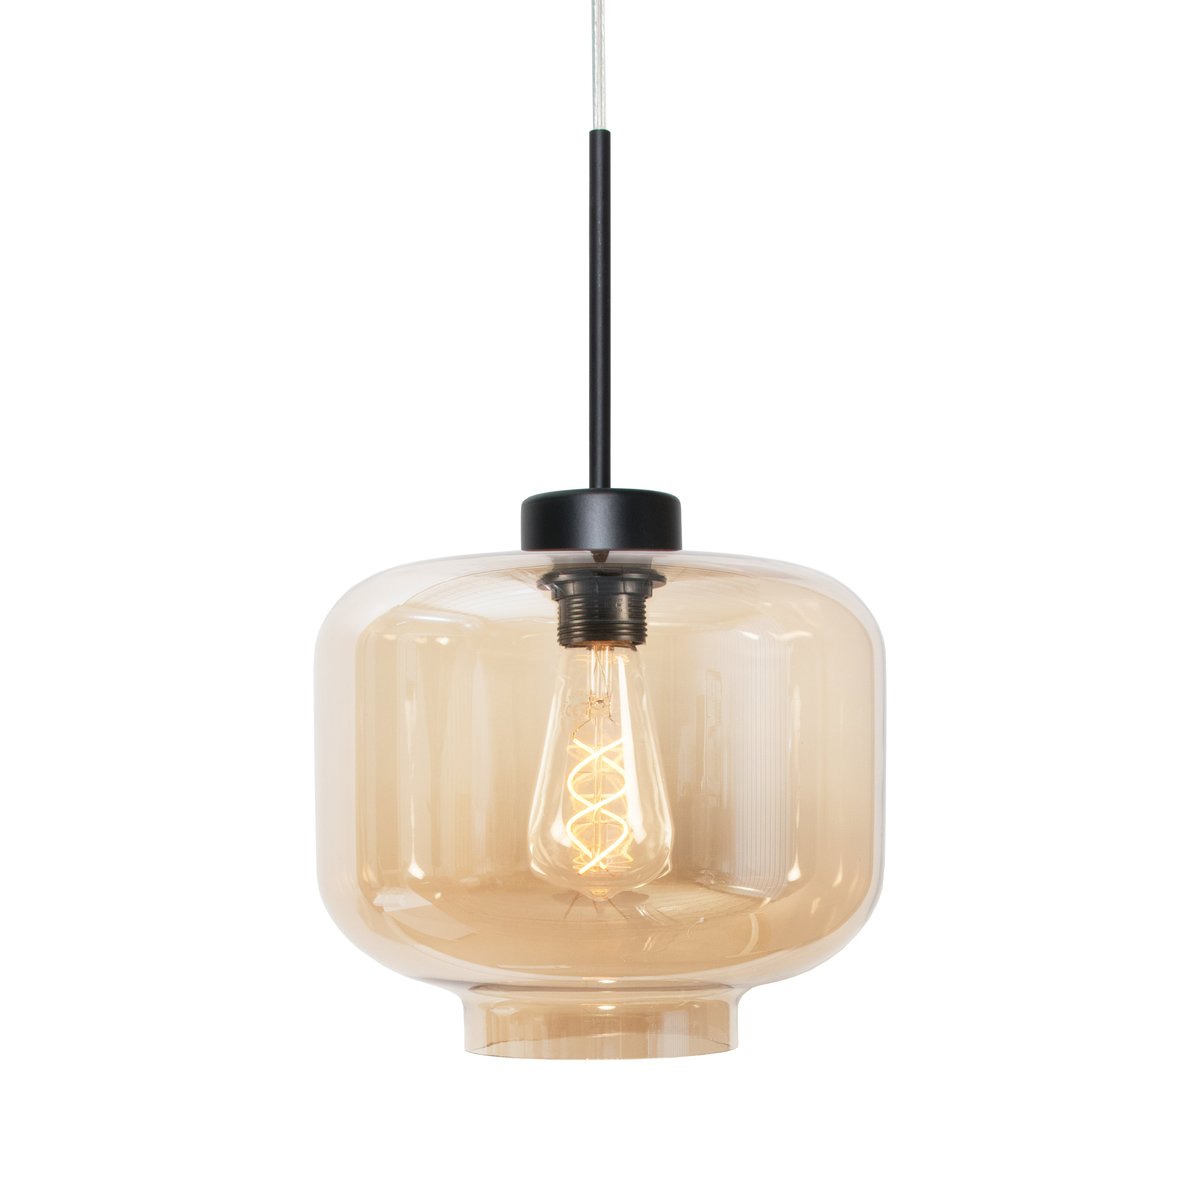 Globen Lighting Ritz hanglamp amber (geel)